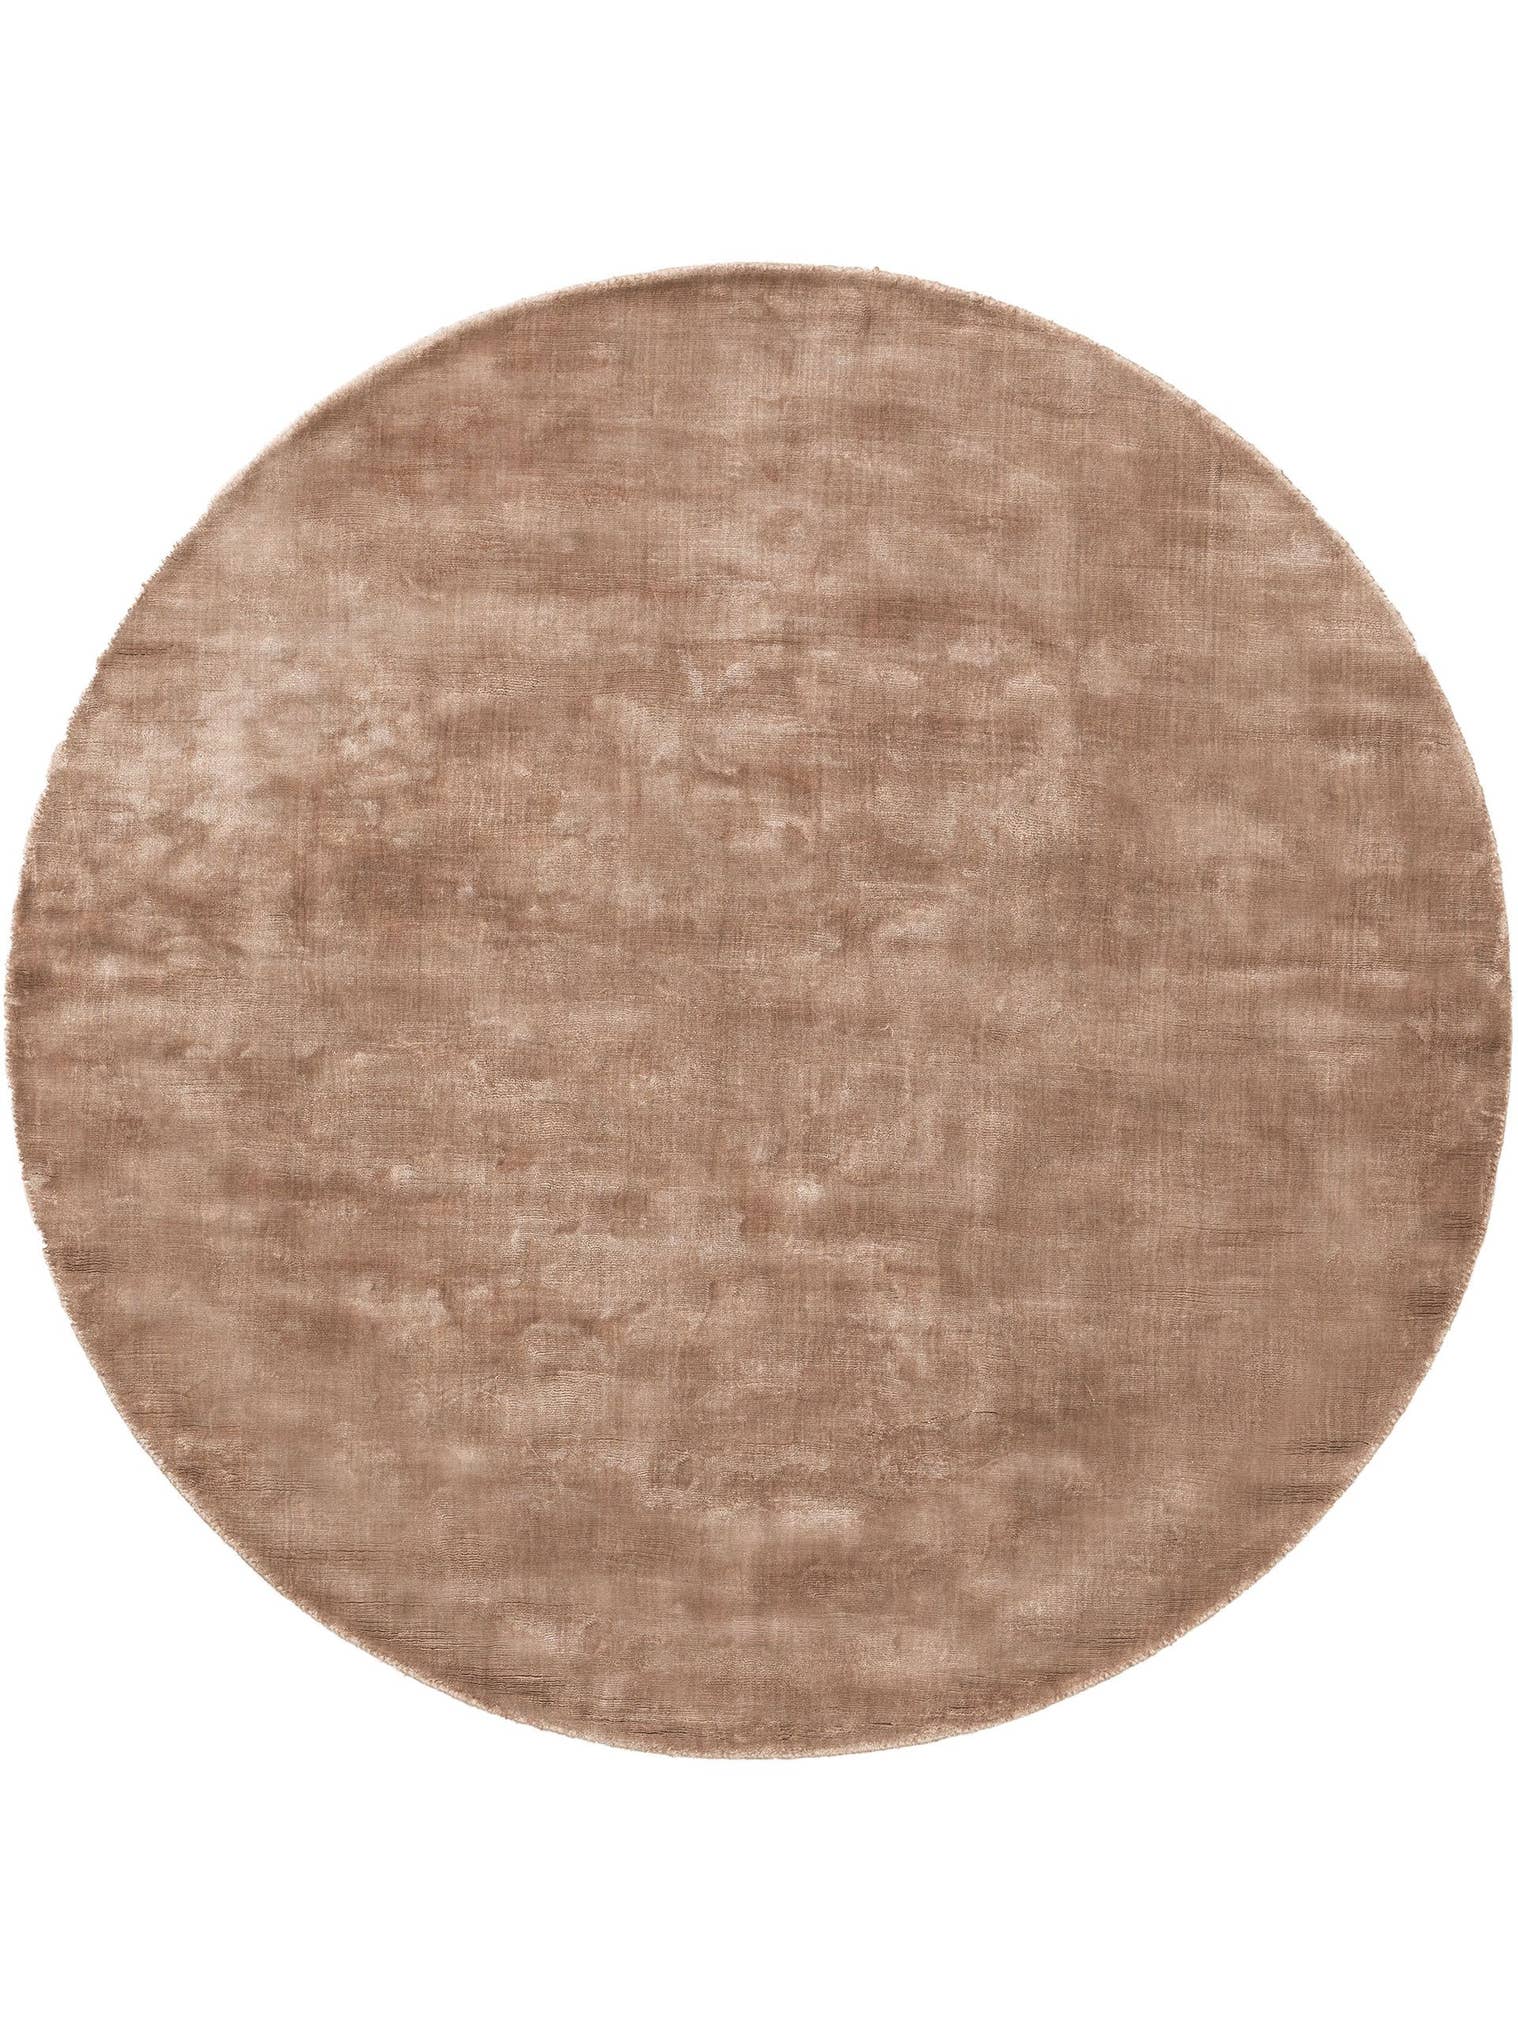 Teppich aus 100% Viskose in Taupe mit 6 bis 10 mm hohem Flor von benuta Pure